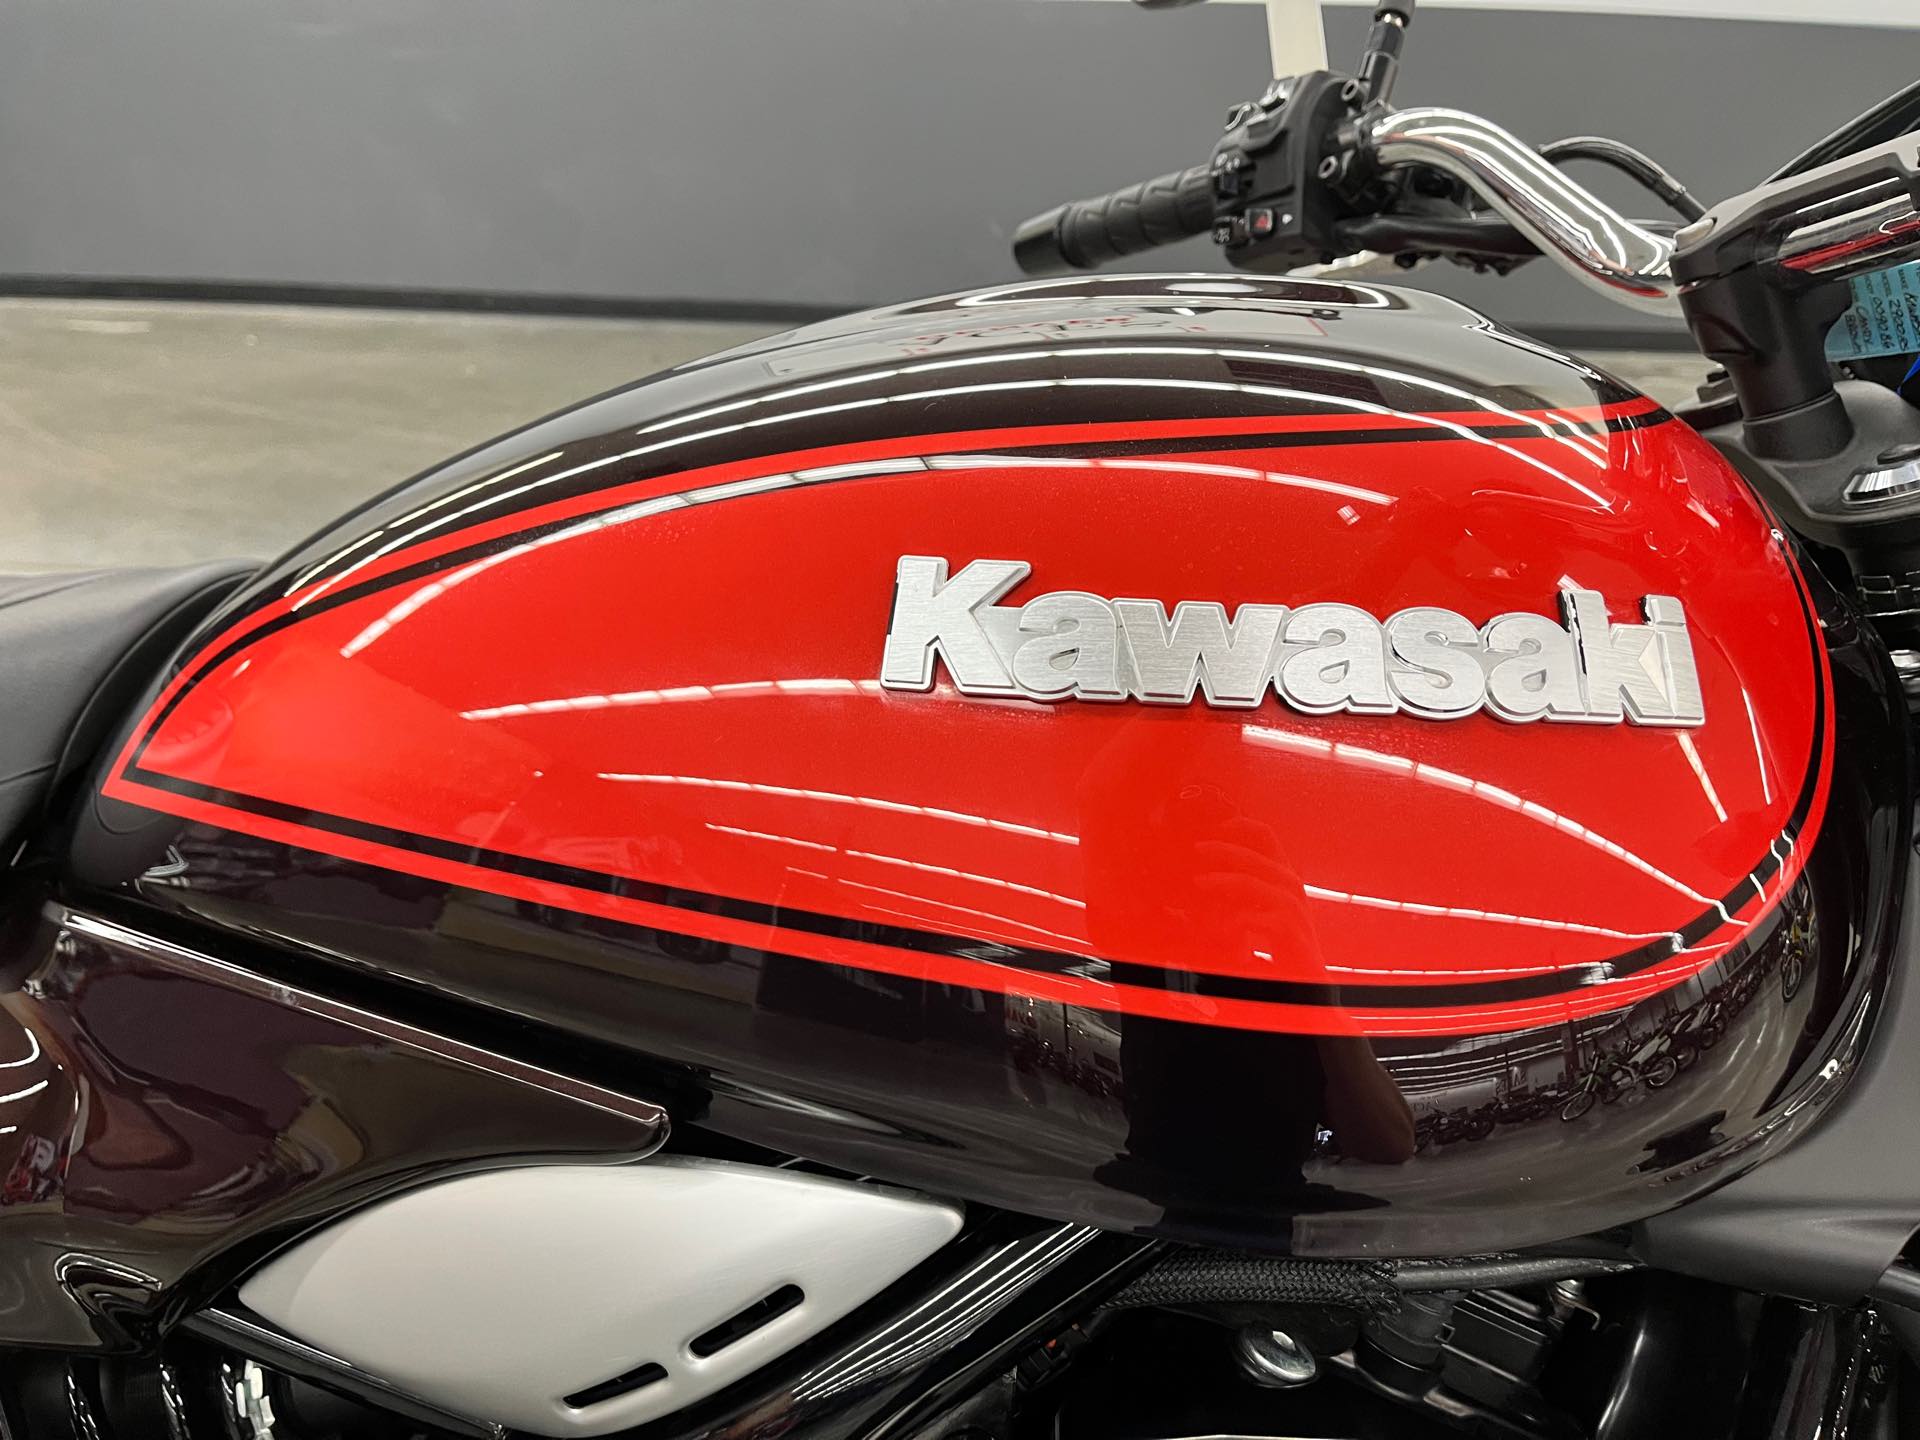 2018 Kawasaki Z900RS Base at Aces Motorcycles - Denver